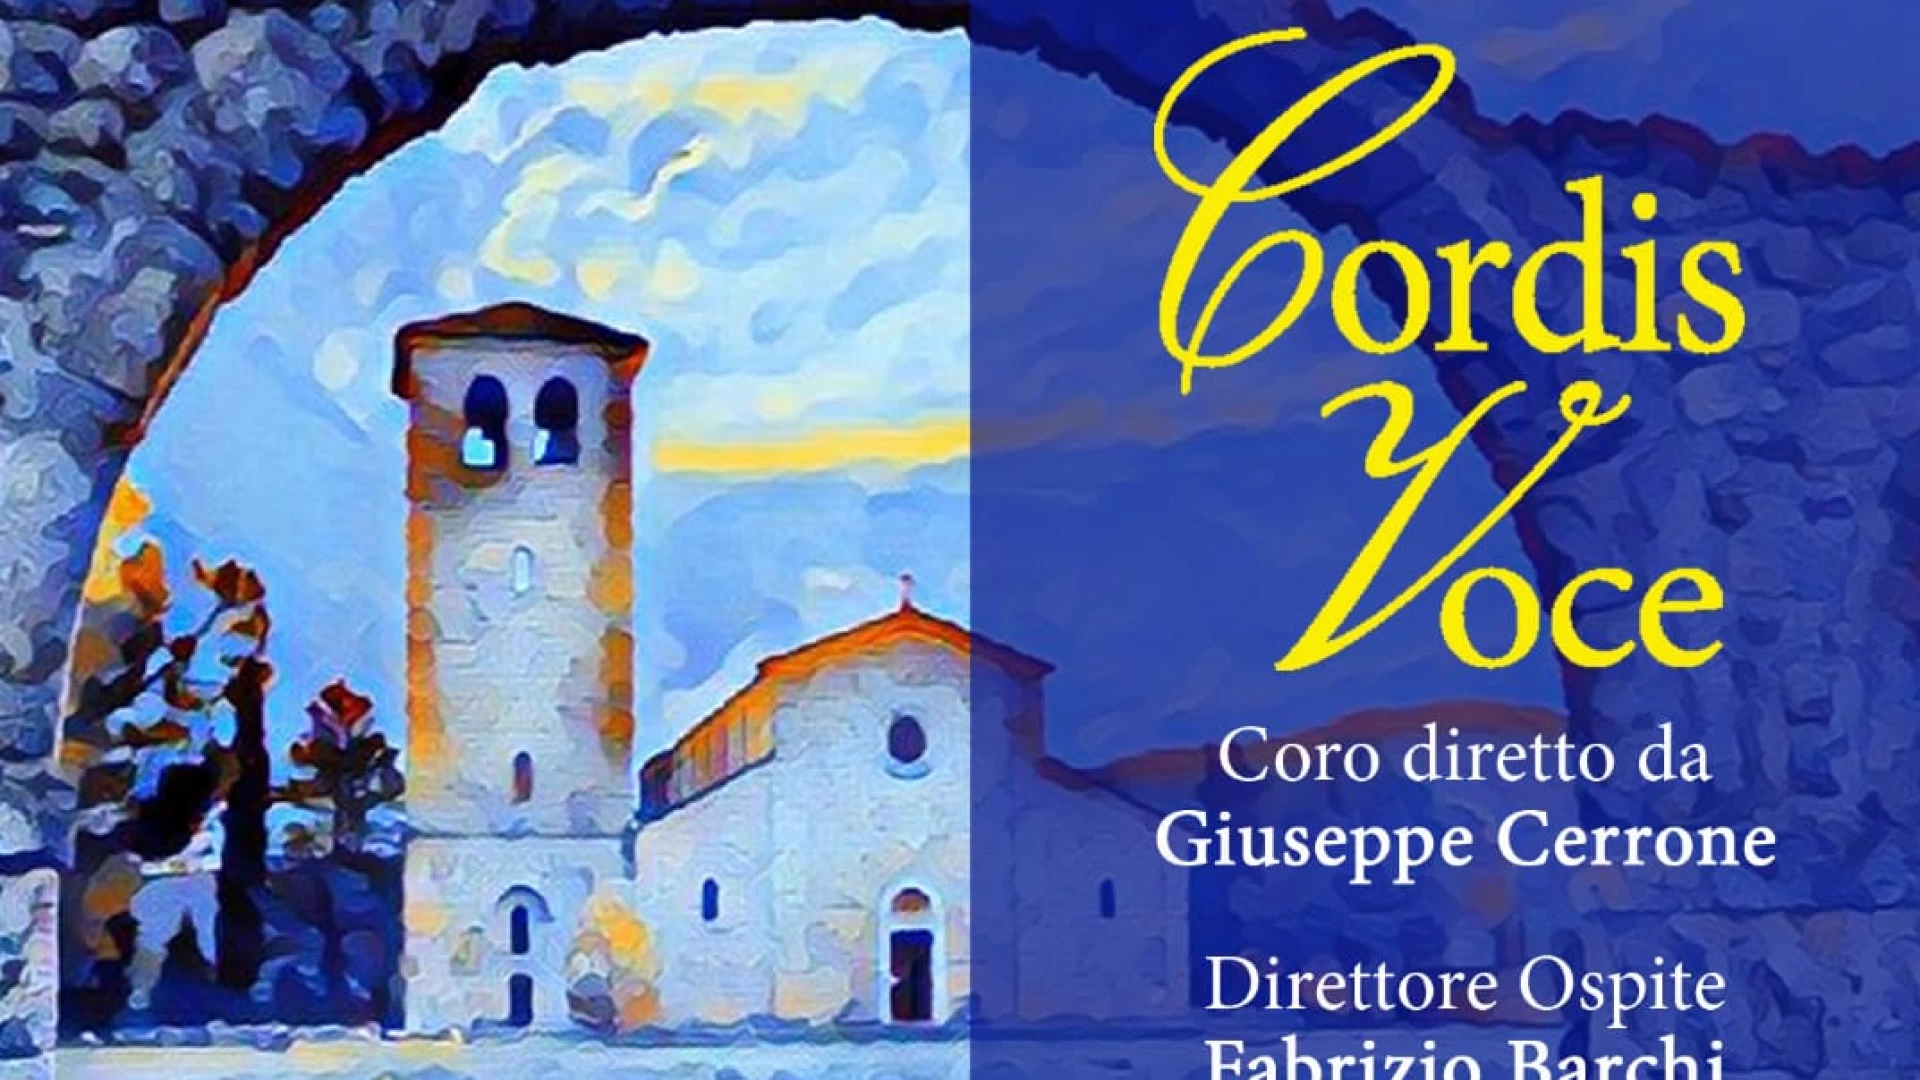 Concerto dell'Epifania all'Abbazia di San Vincenzo al Volturno con il coro "Cordis Voce"